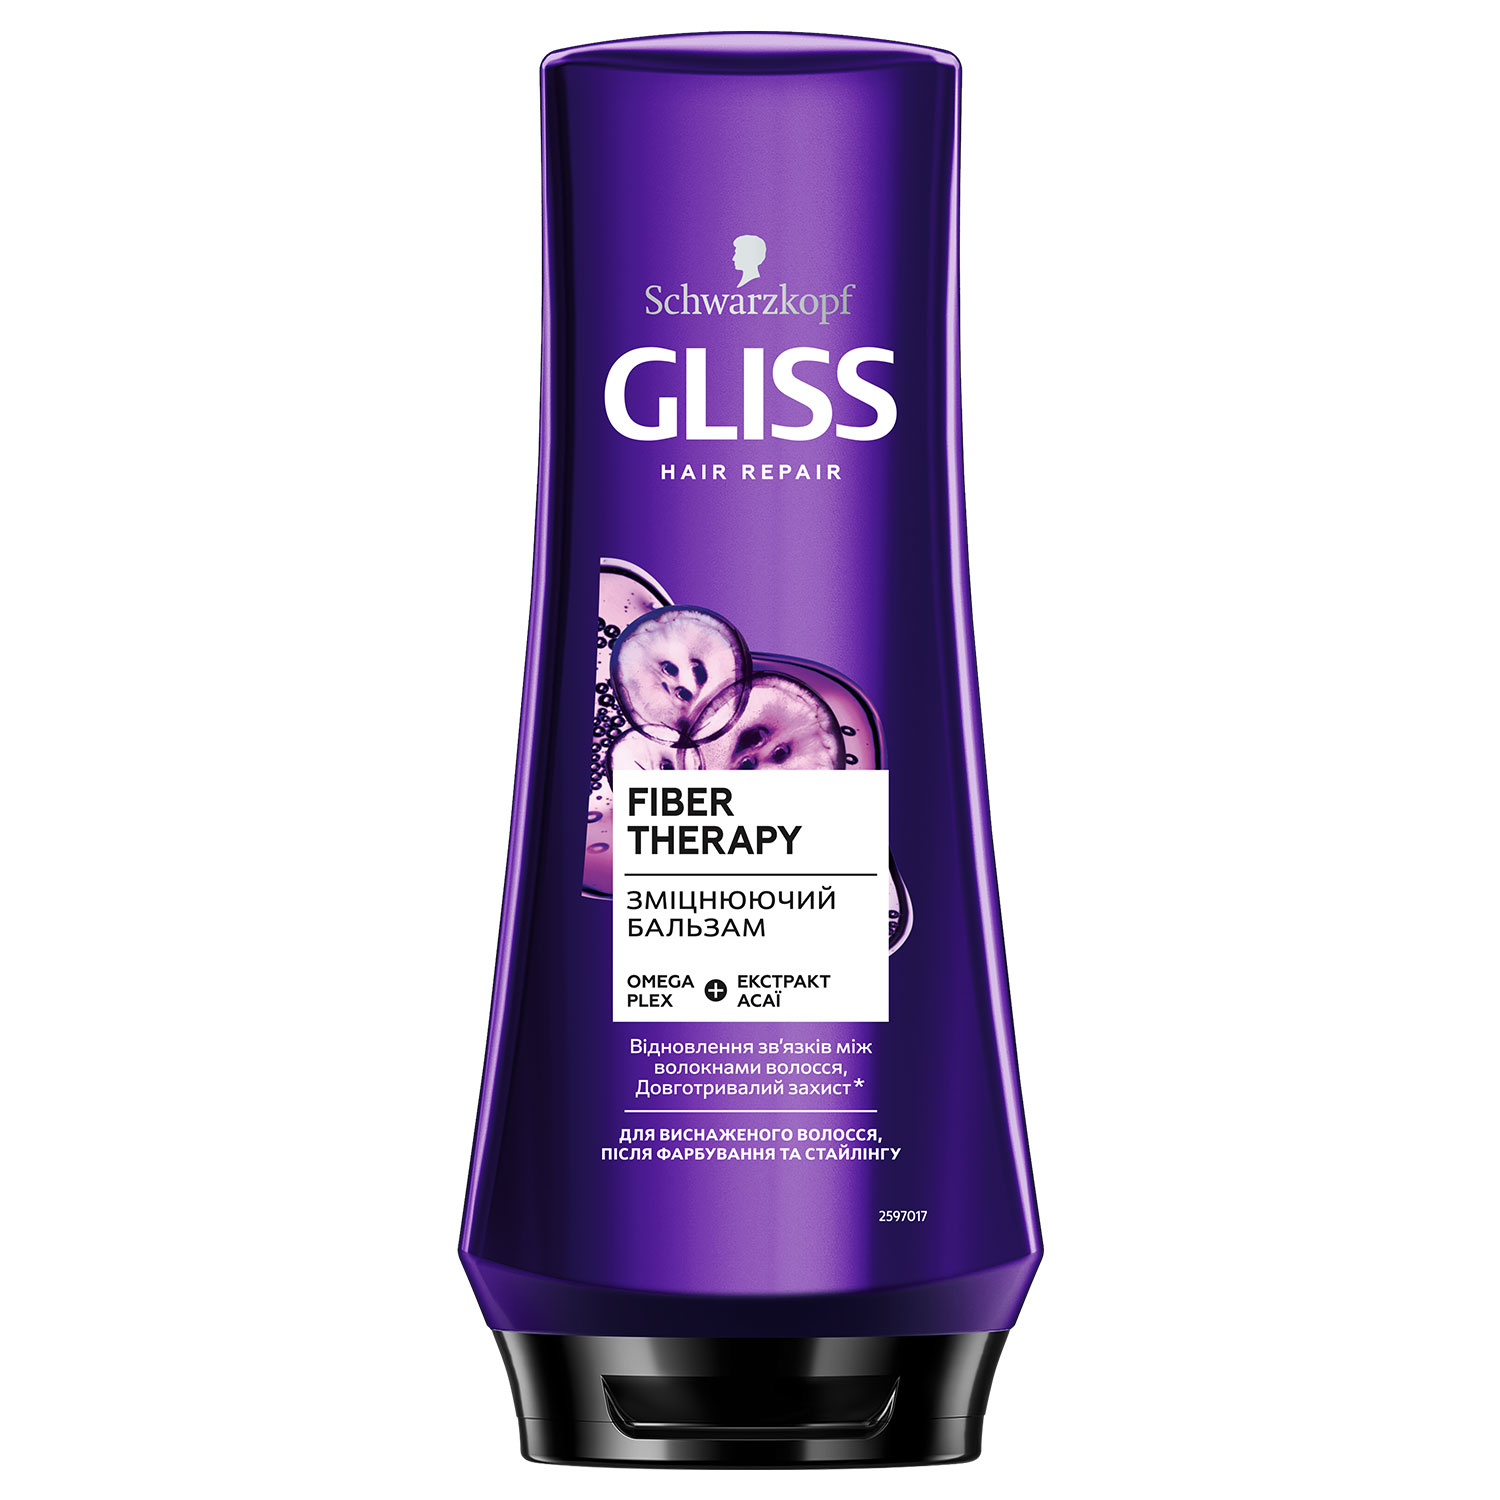 Бальзам Gliss Kur Hair Renovation для ослабленных и истощенных волос после окрашивания и стайлинга 200мл